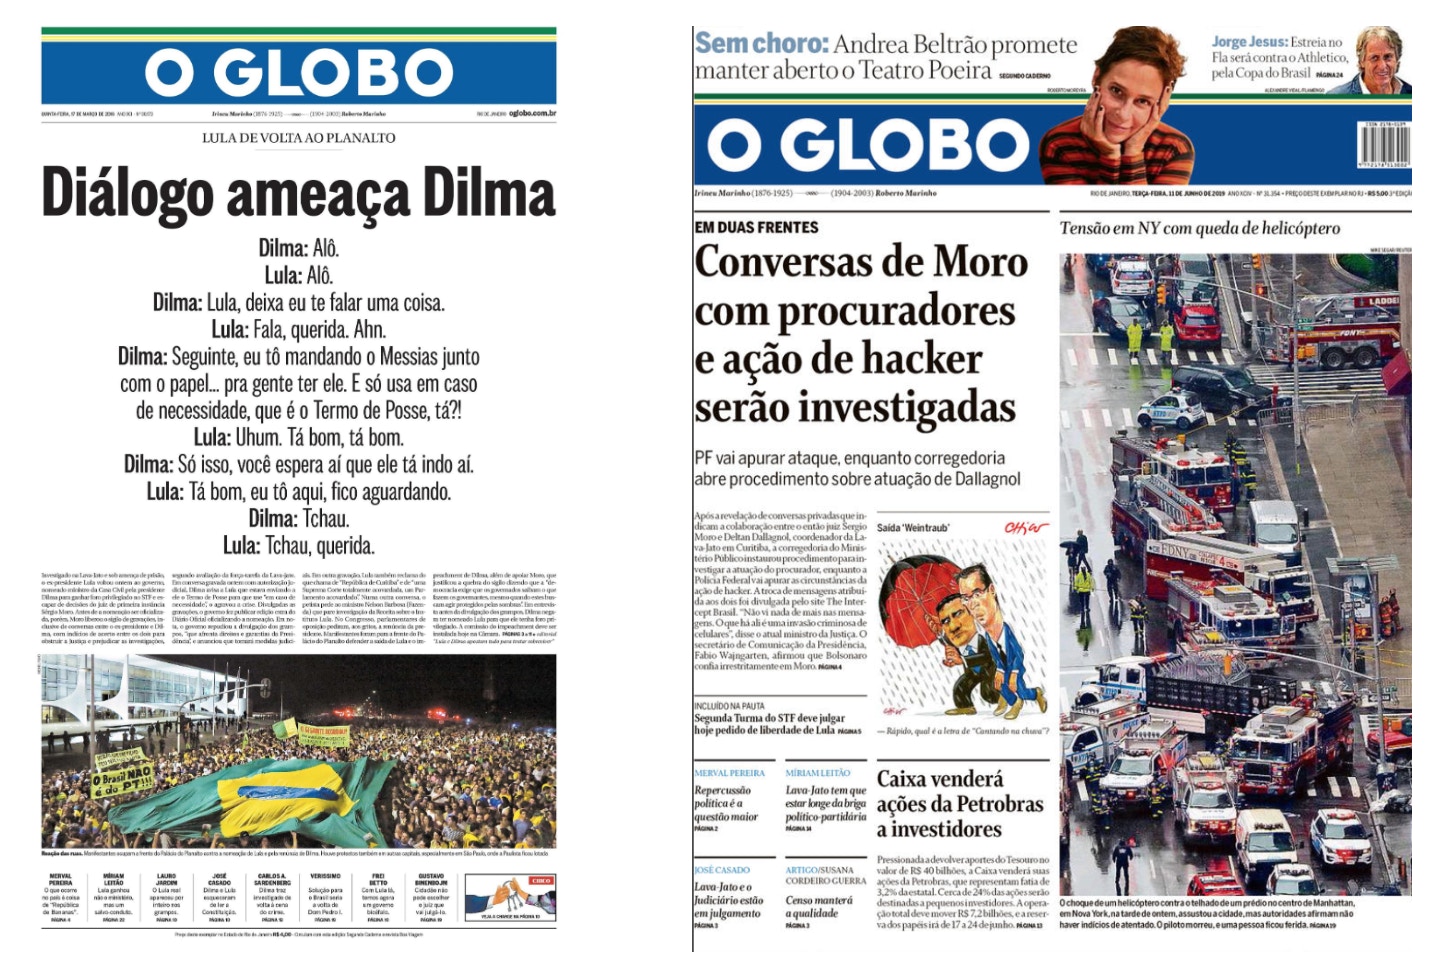 Capas do jornal O Globo em 17 de março de 2016 e 11 de junho de 2019.